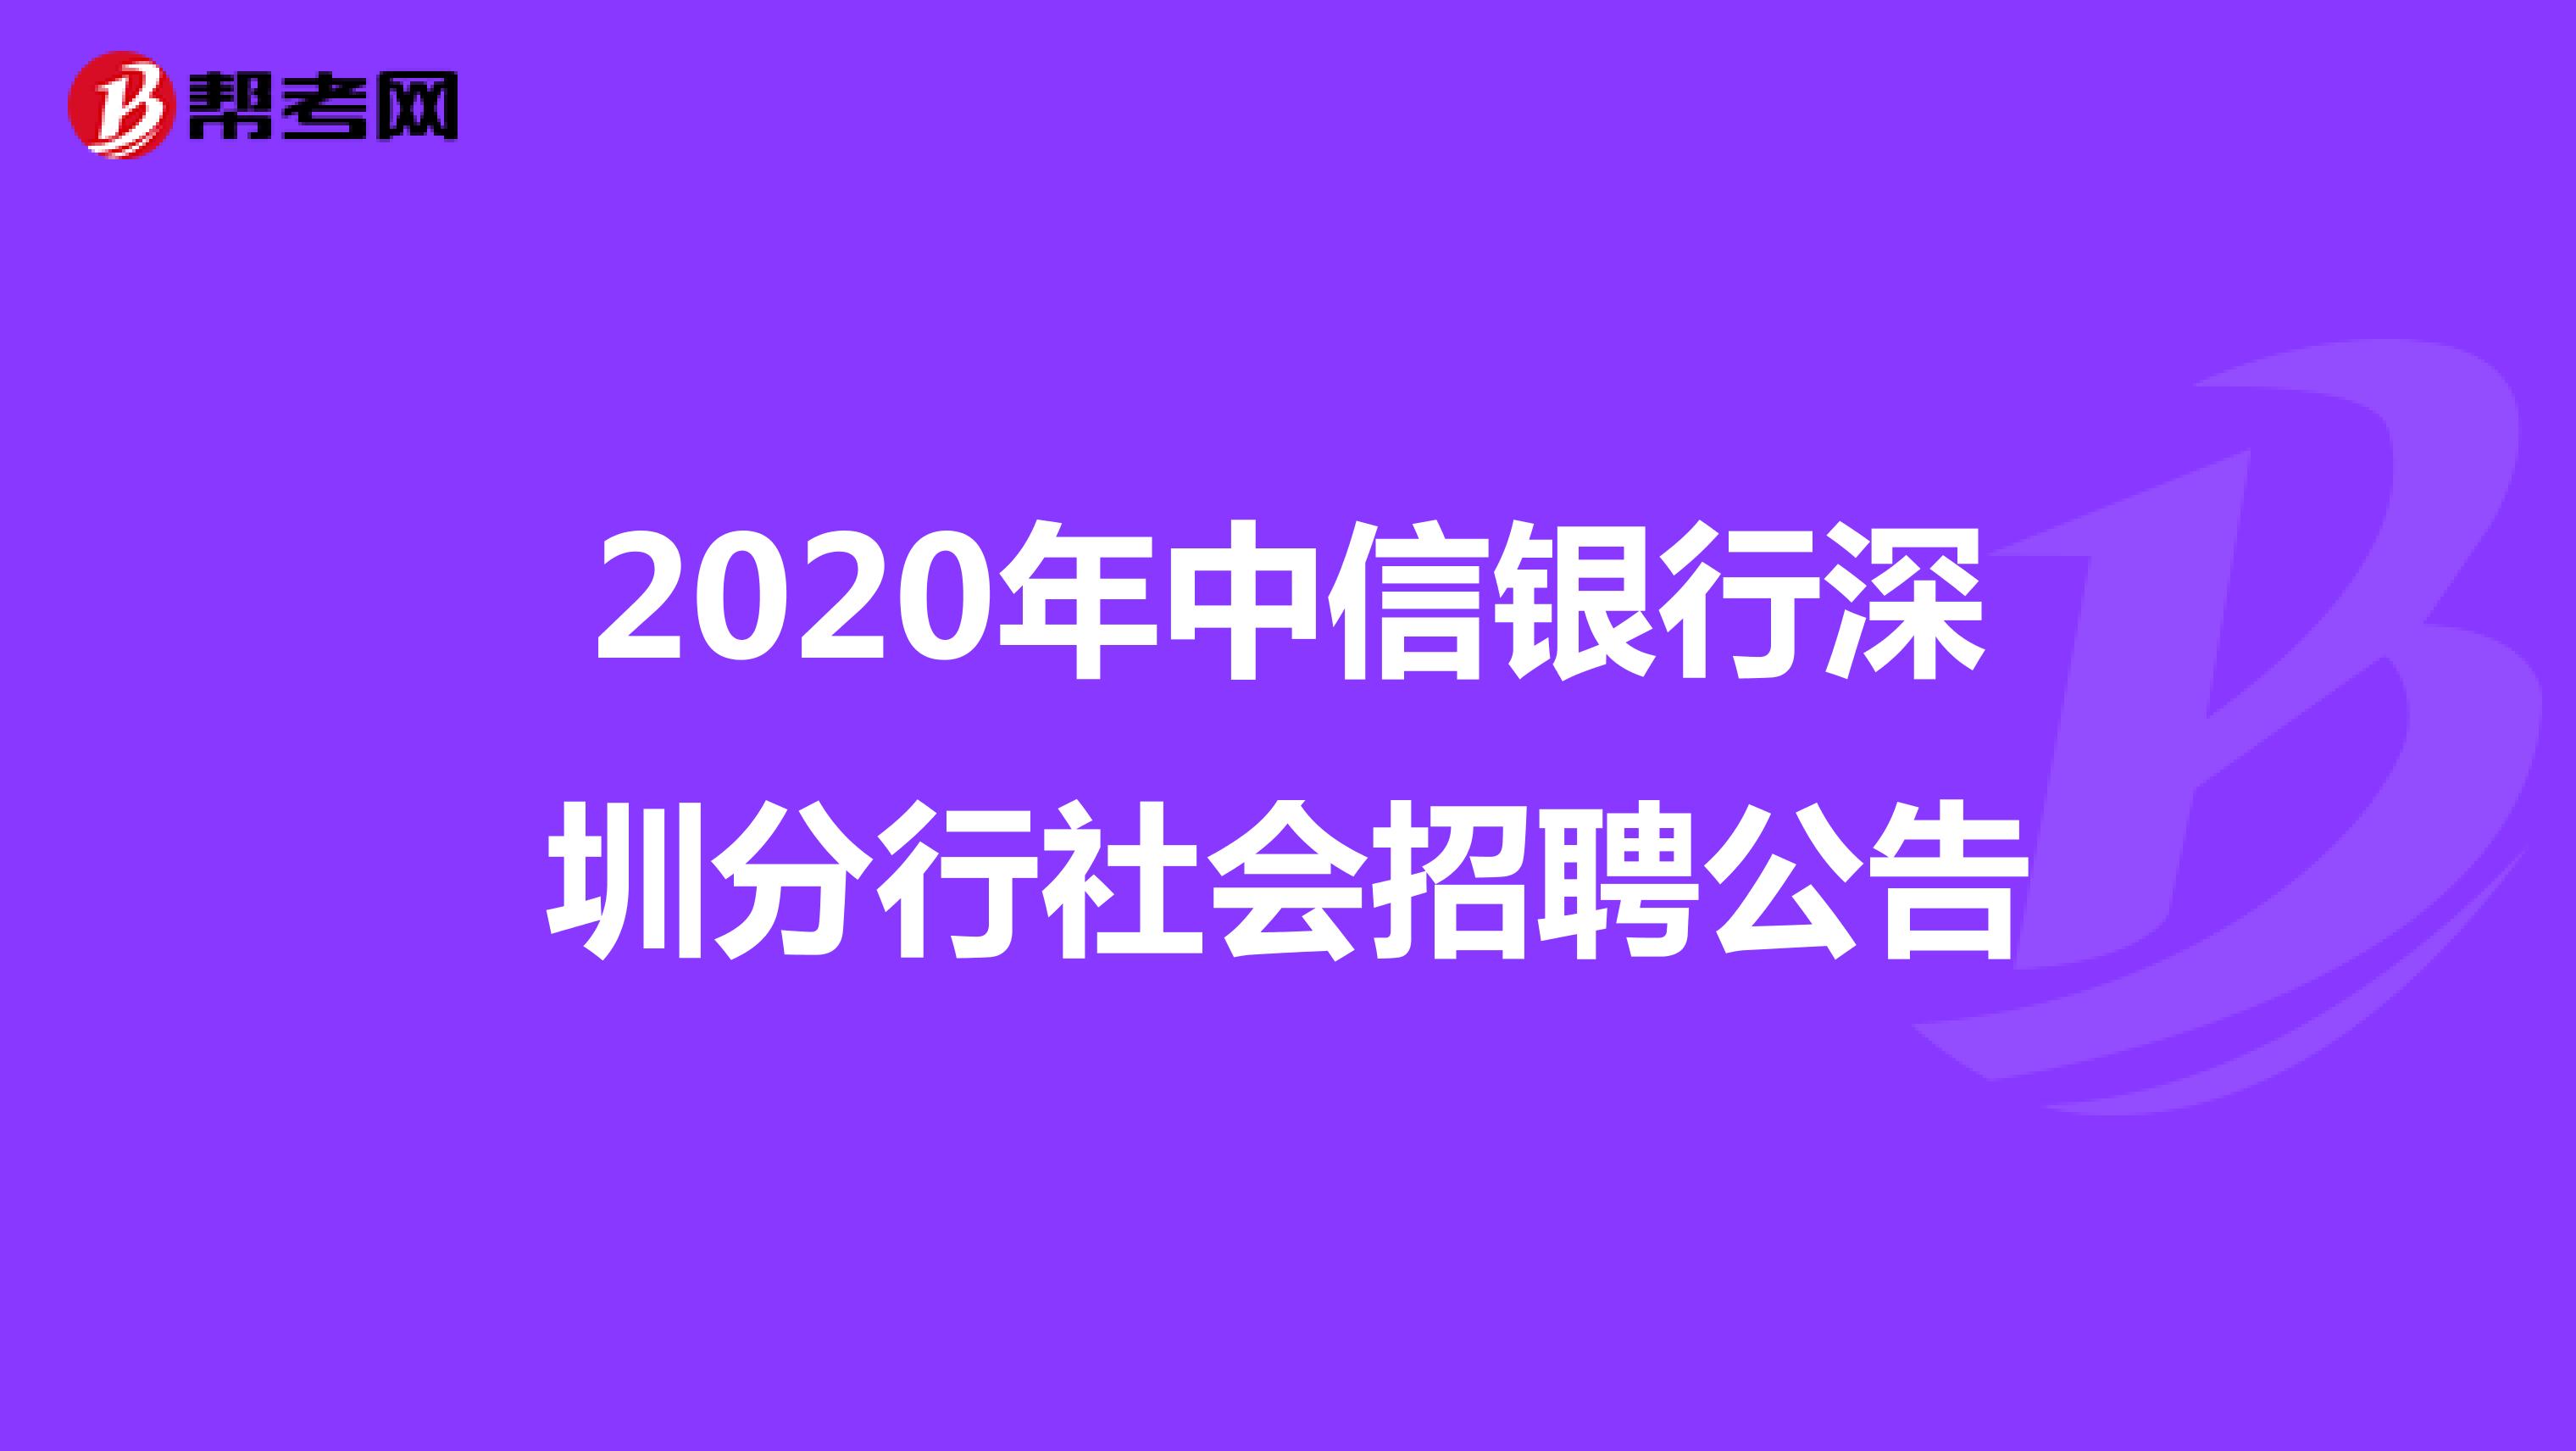 2020年中信银行深圳分行社会招聘公告